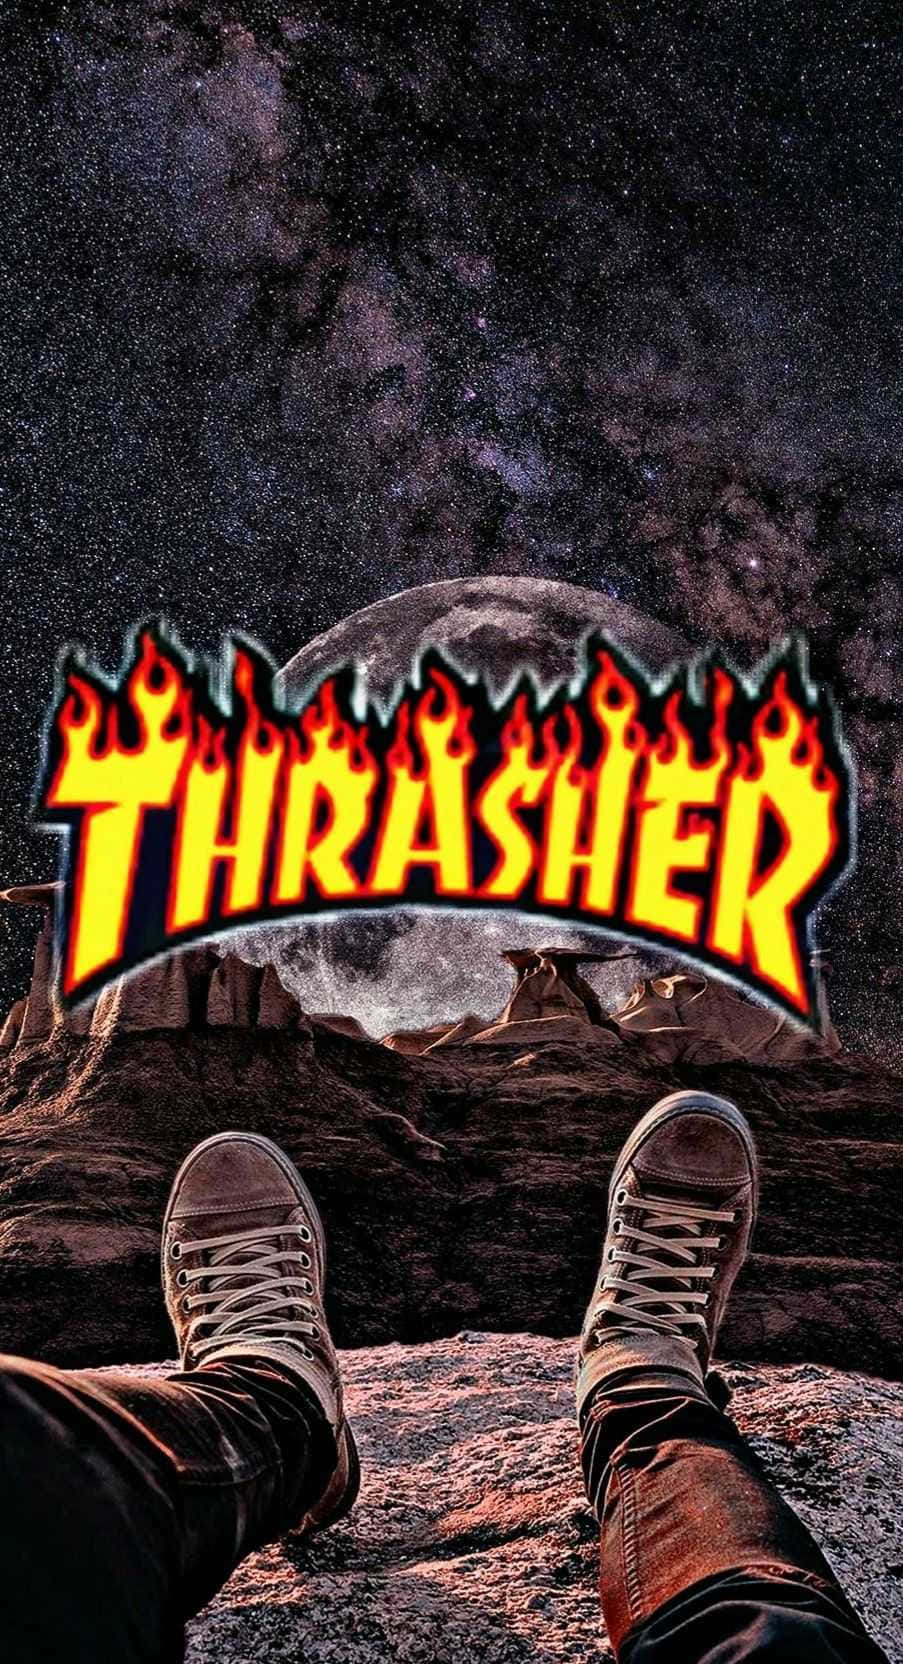 Thrasherthrasher - Thrasher - Thrasher - Thrasher - Thr :-